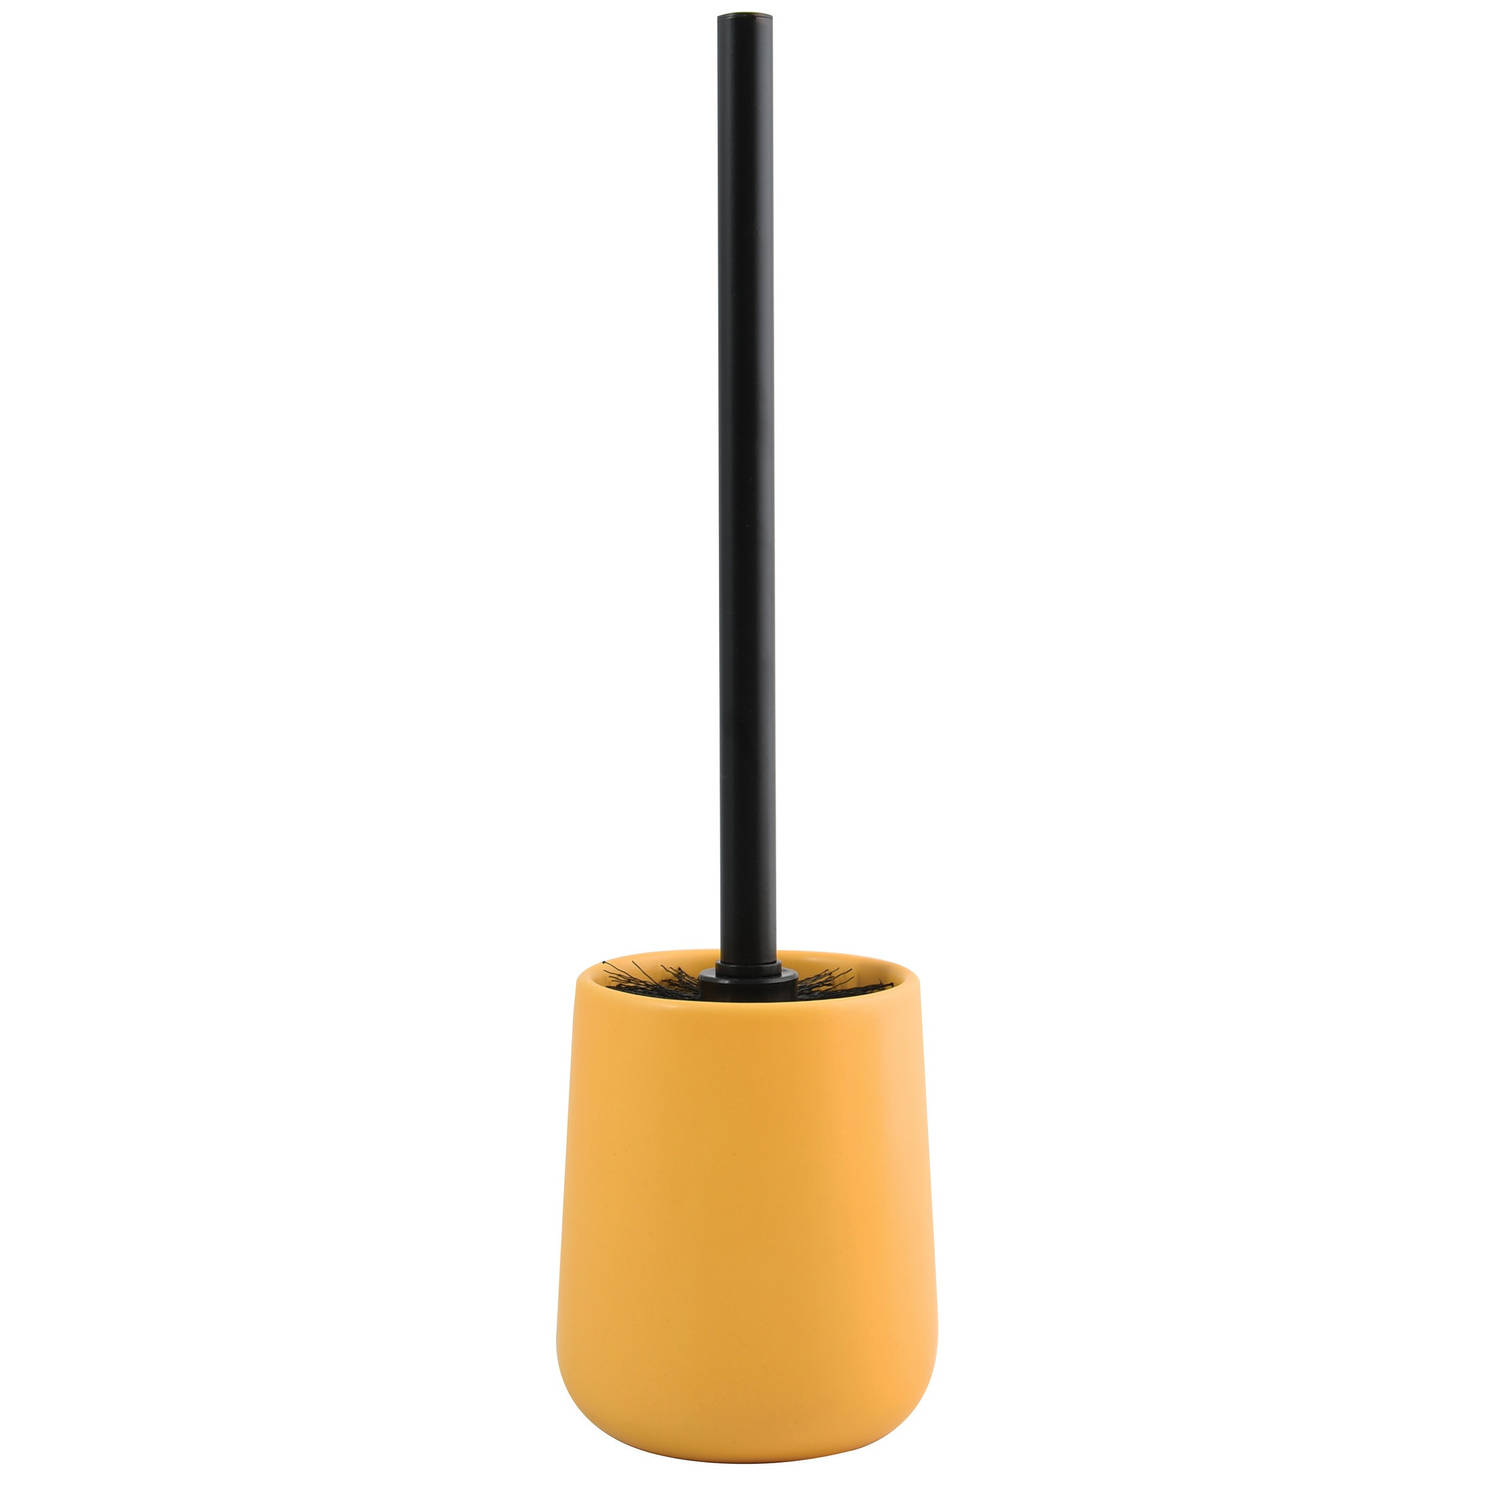 MSV Toiletborstel in houder/wc-borstel Malmo - keramiek/rvs - saffraan geel/zwart - 39 x 10 cm